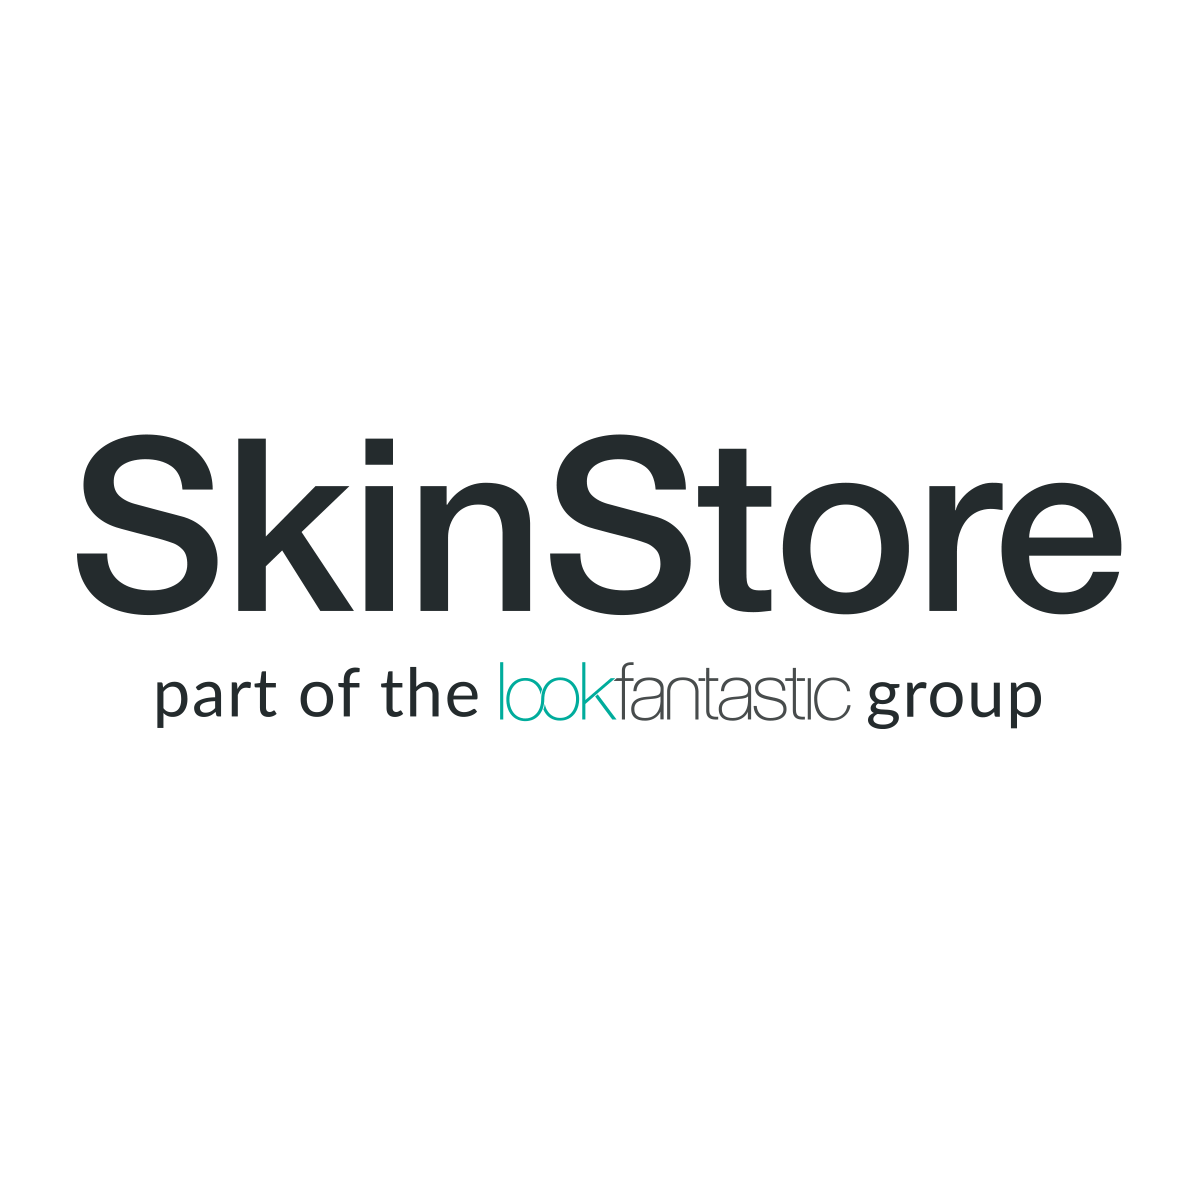 Skin Store logo